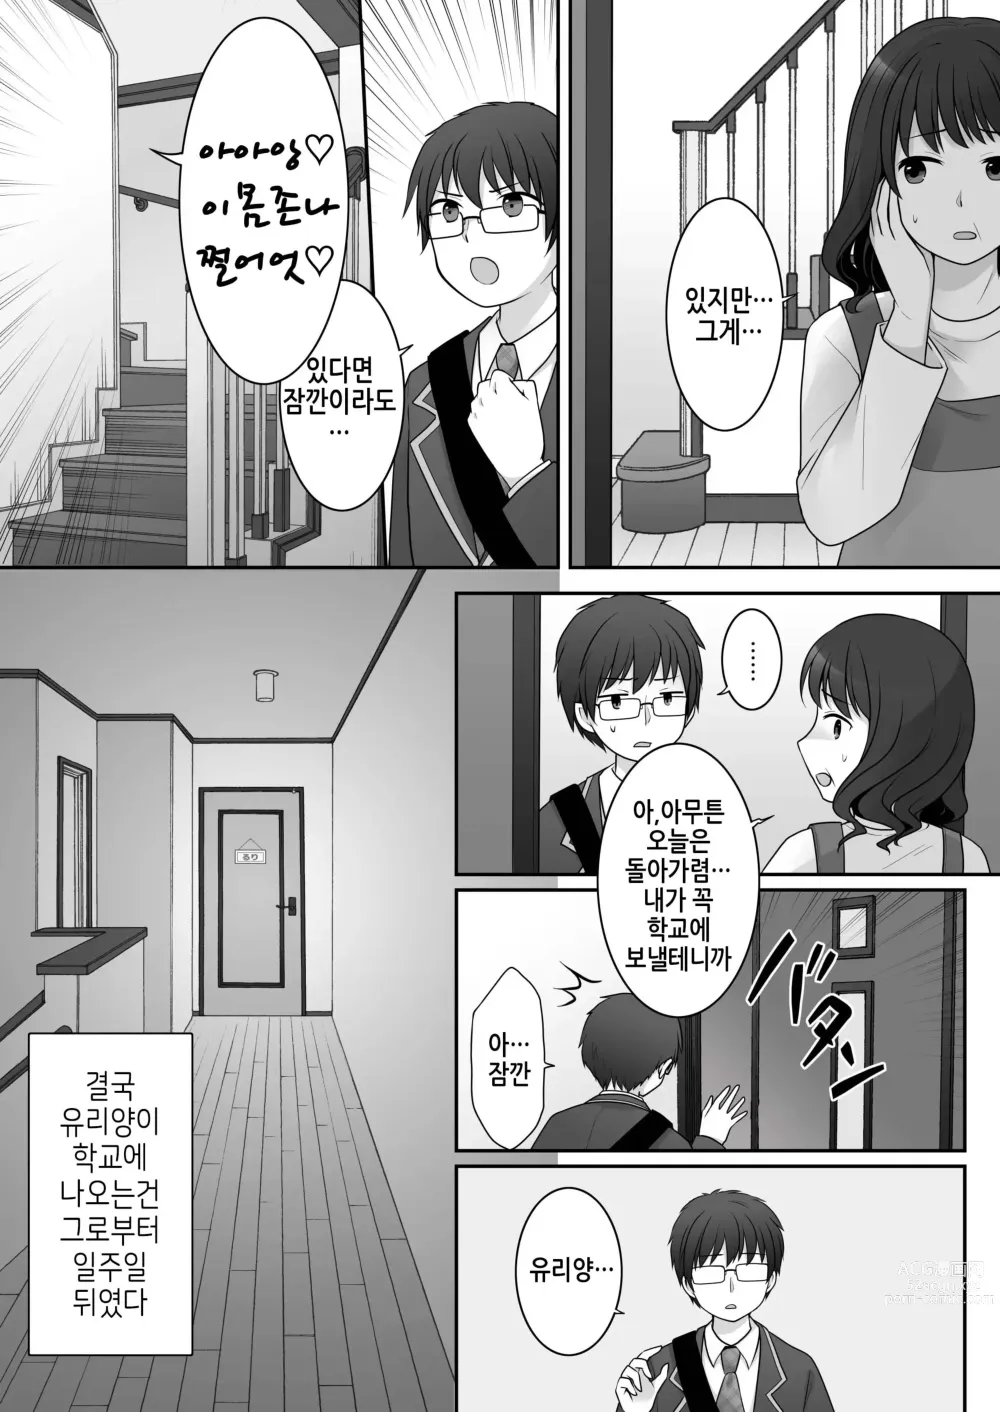 Page 7 of doujinshi 불량 in 그녀 내 여자친구의 몸뚱이는 불량남에게 납치되었다.